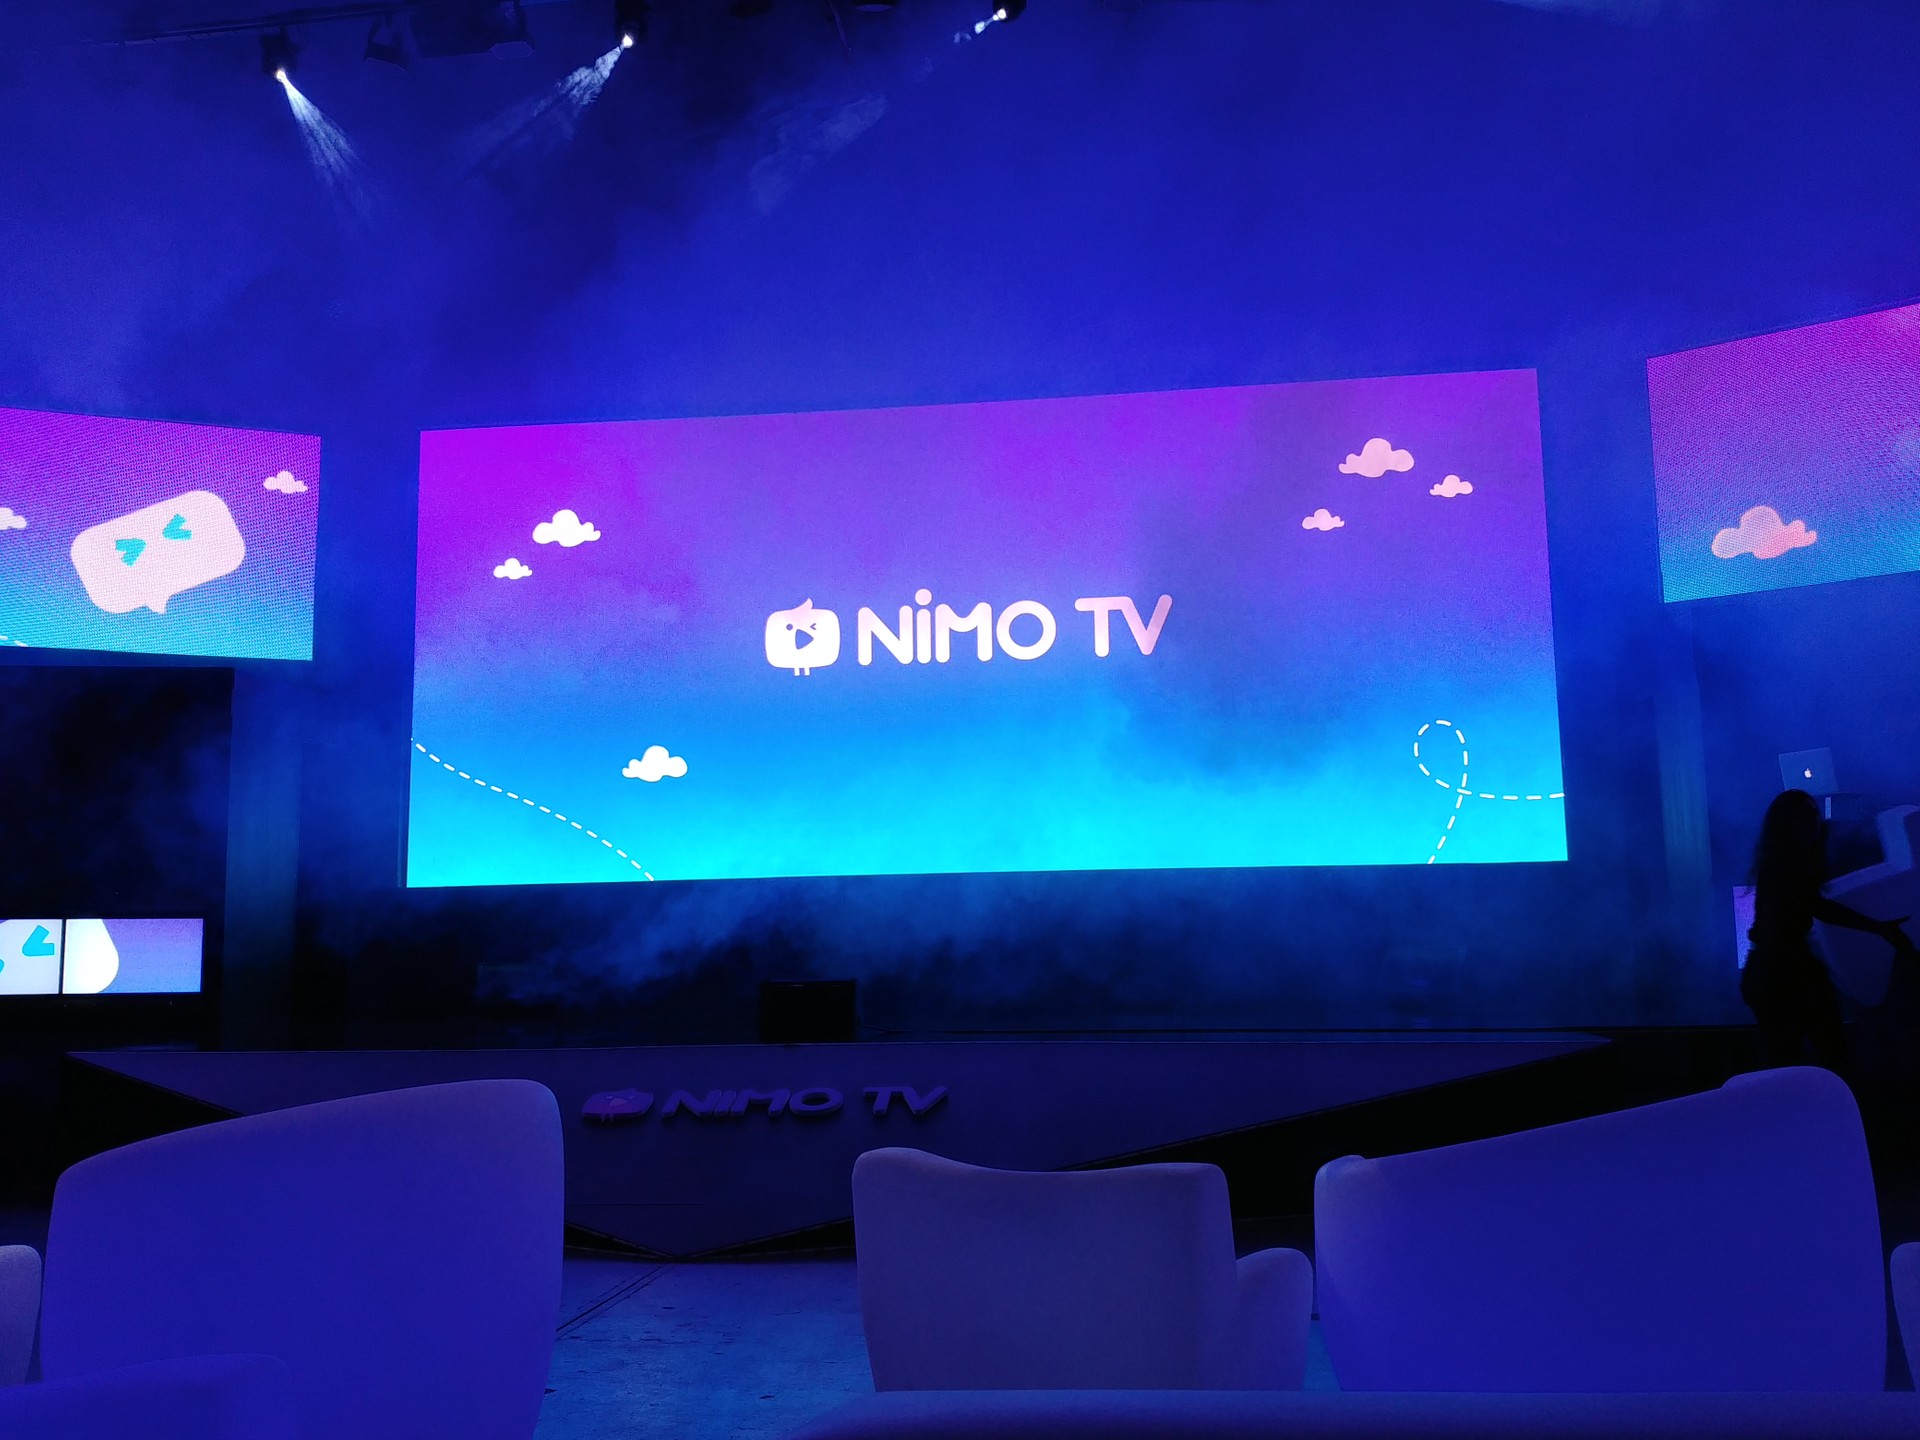 Twitch ou Nimo TV? Compare as plataformas de streaming de jogos